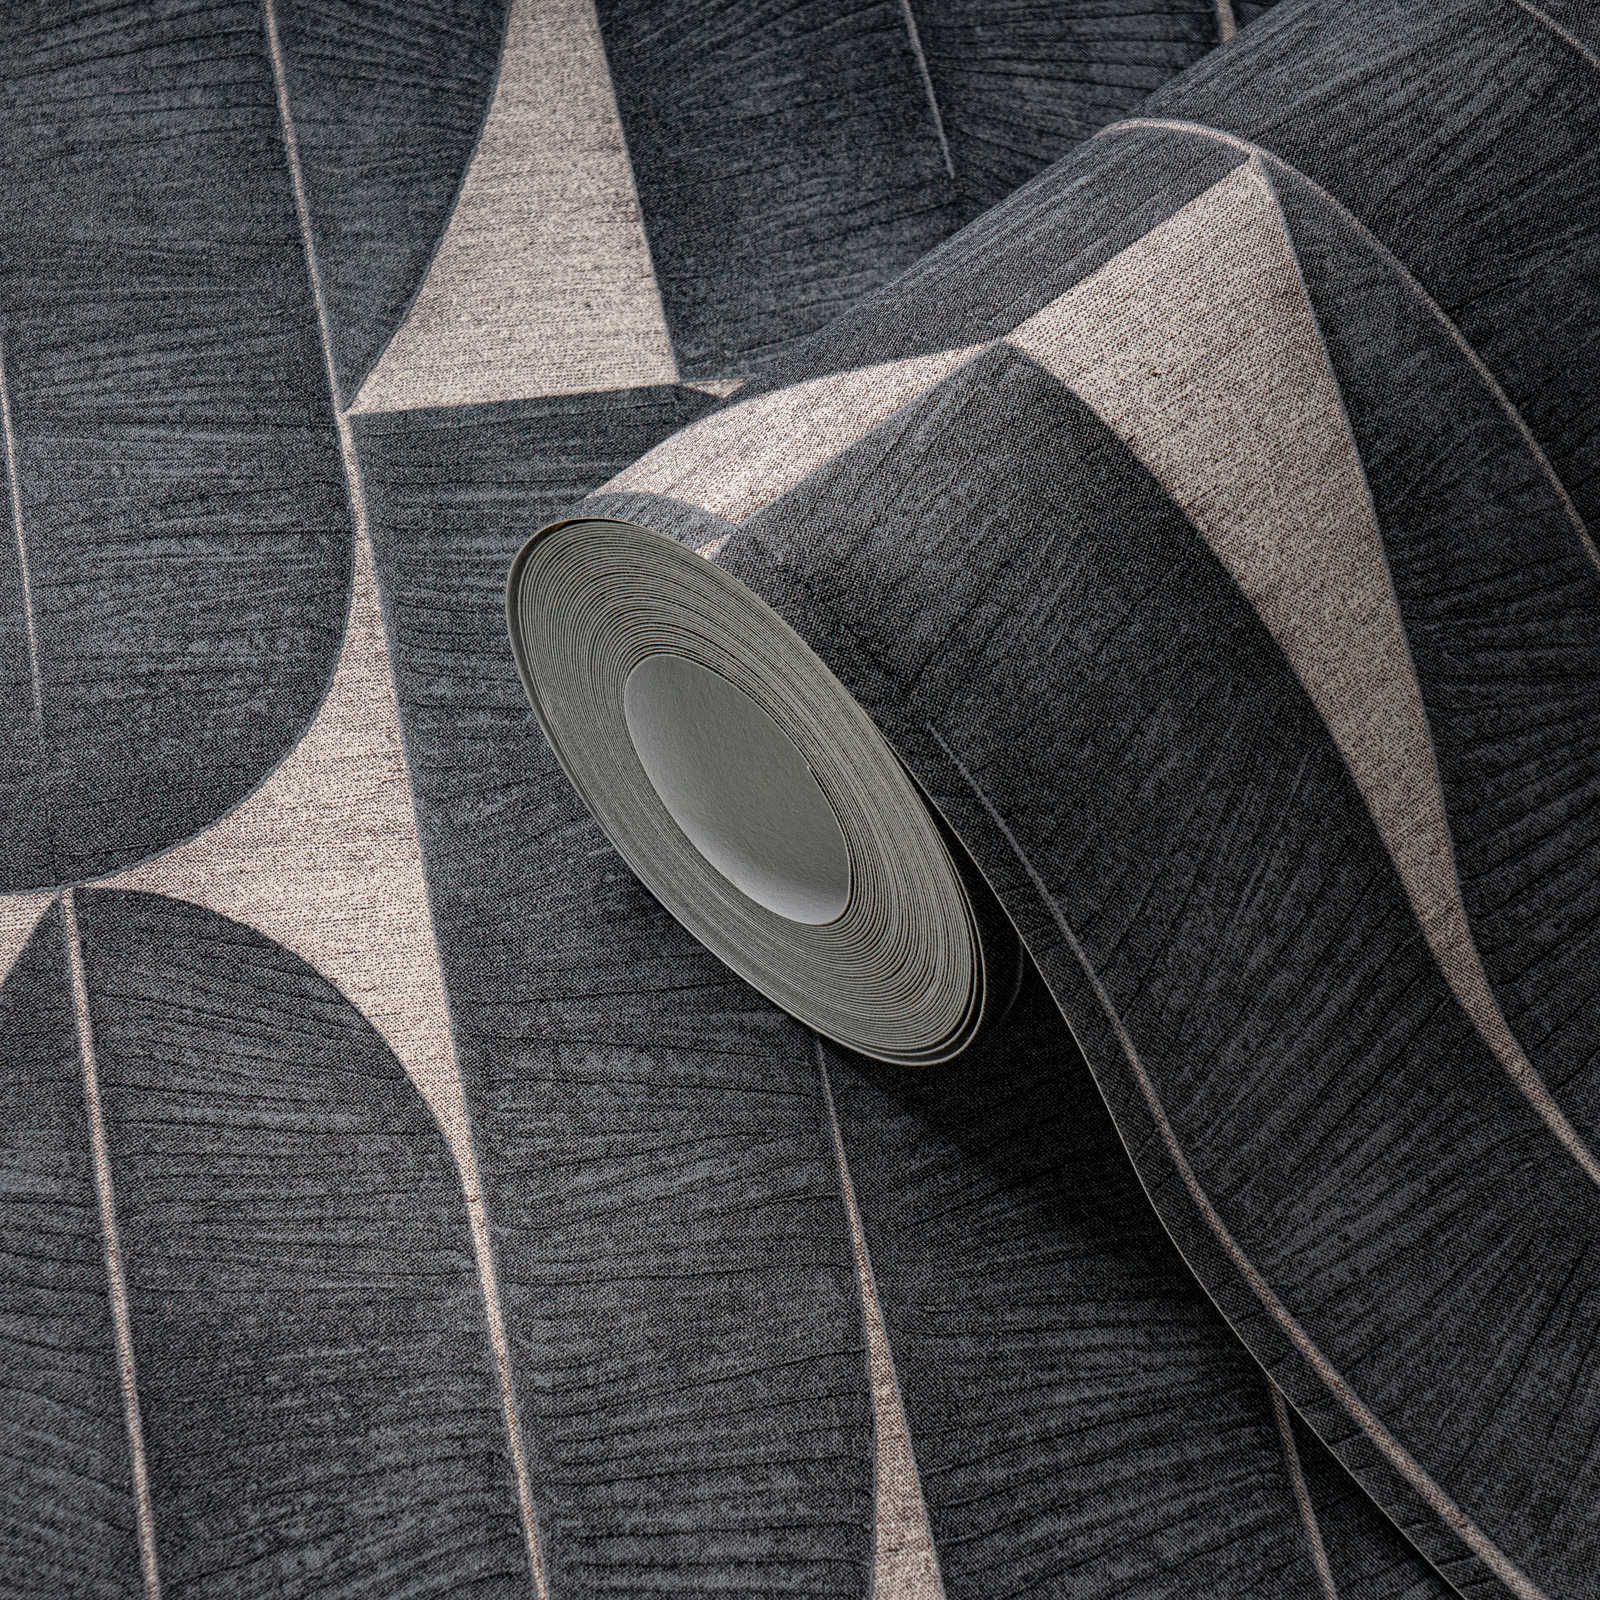             Papel pintado no tejido con motivos geométricos en forma de hoja - beige, negro
        